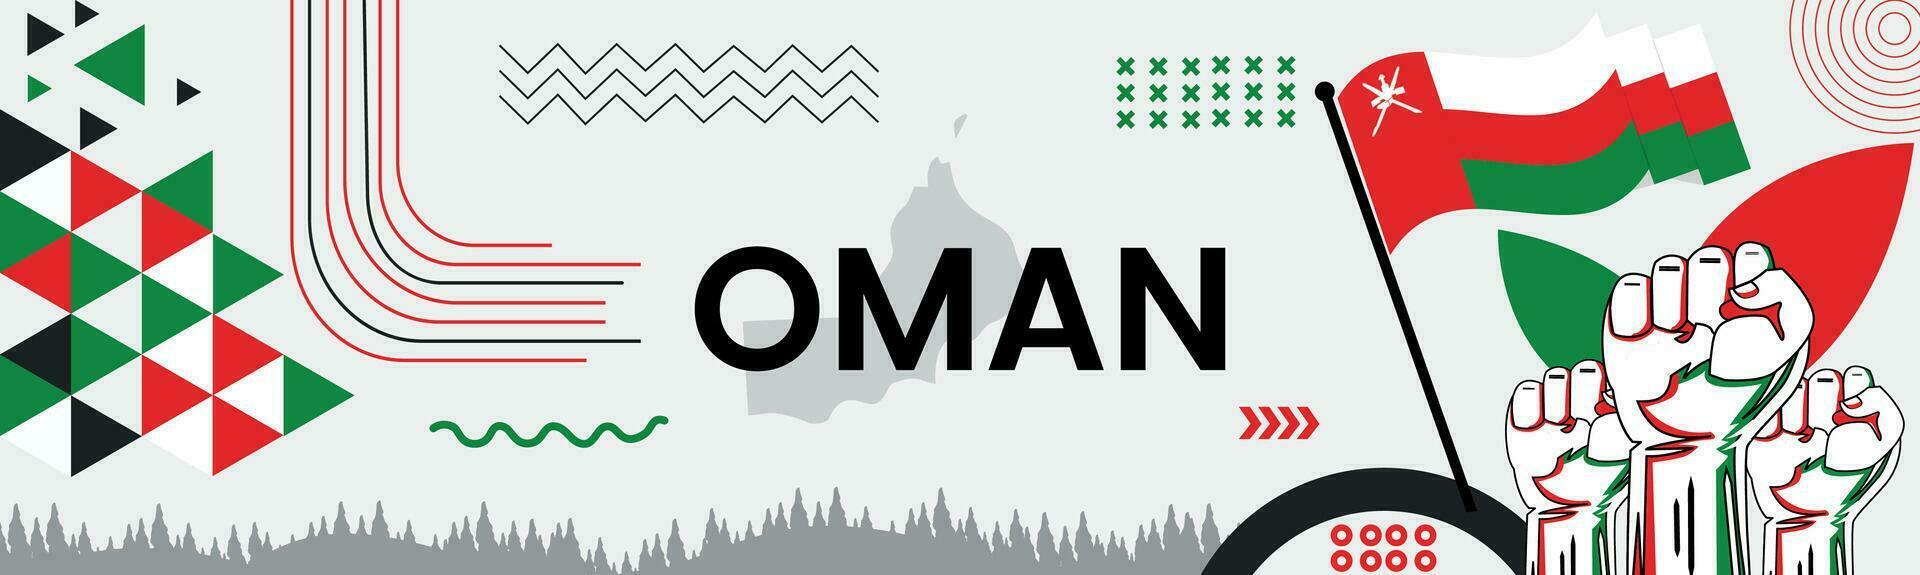 Omán nacional día bandera con mapa, bandera colores tema antecedentes y geométrico resumen retro moderno colorido diseño con elevado manos o puños vector